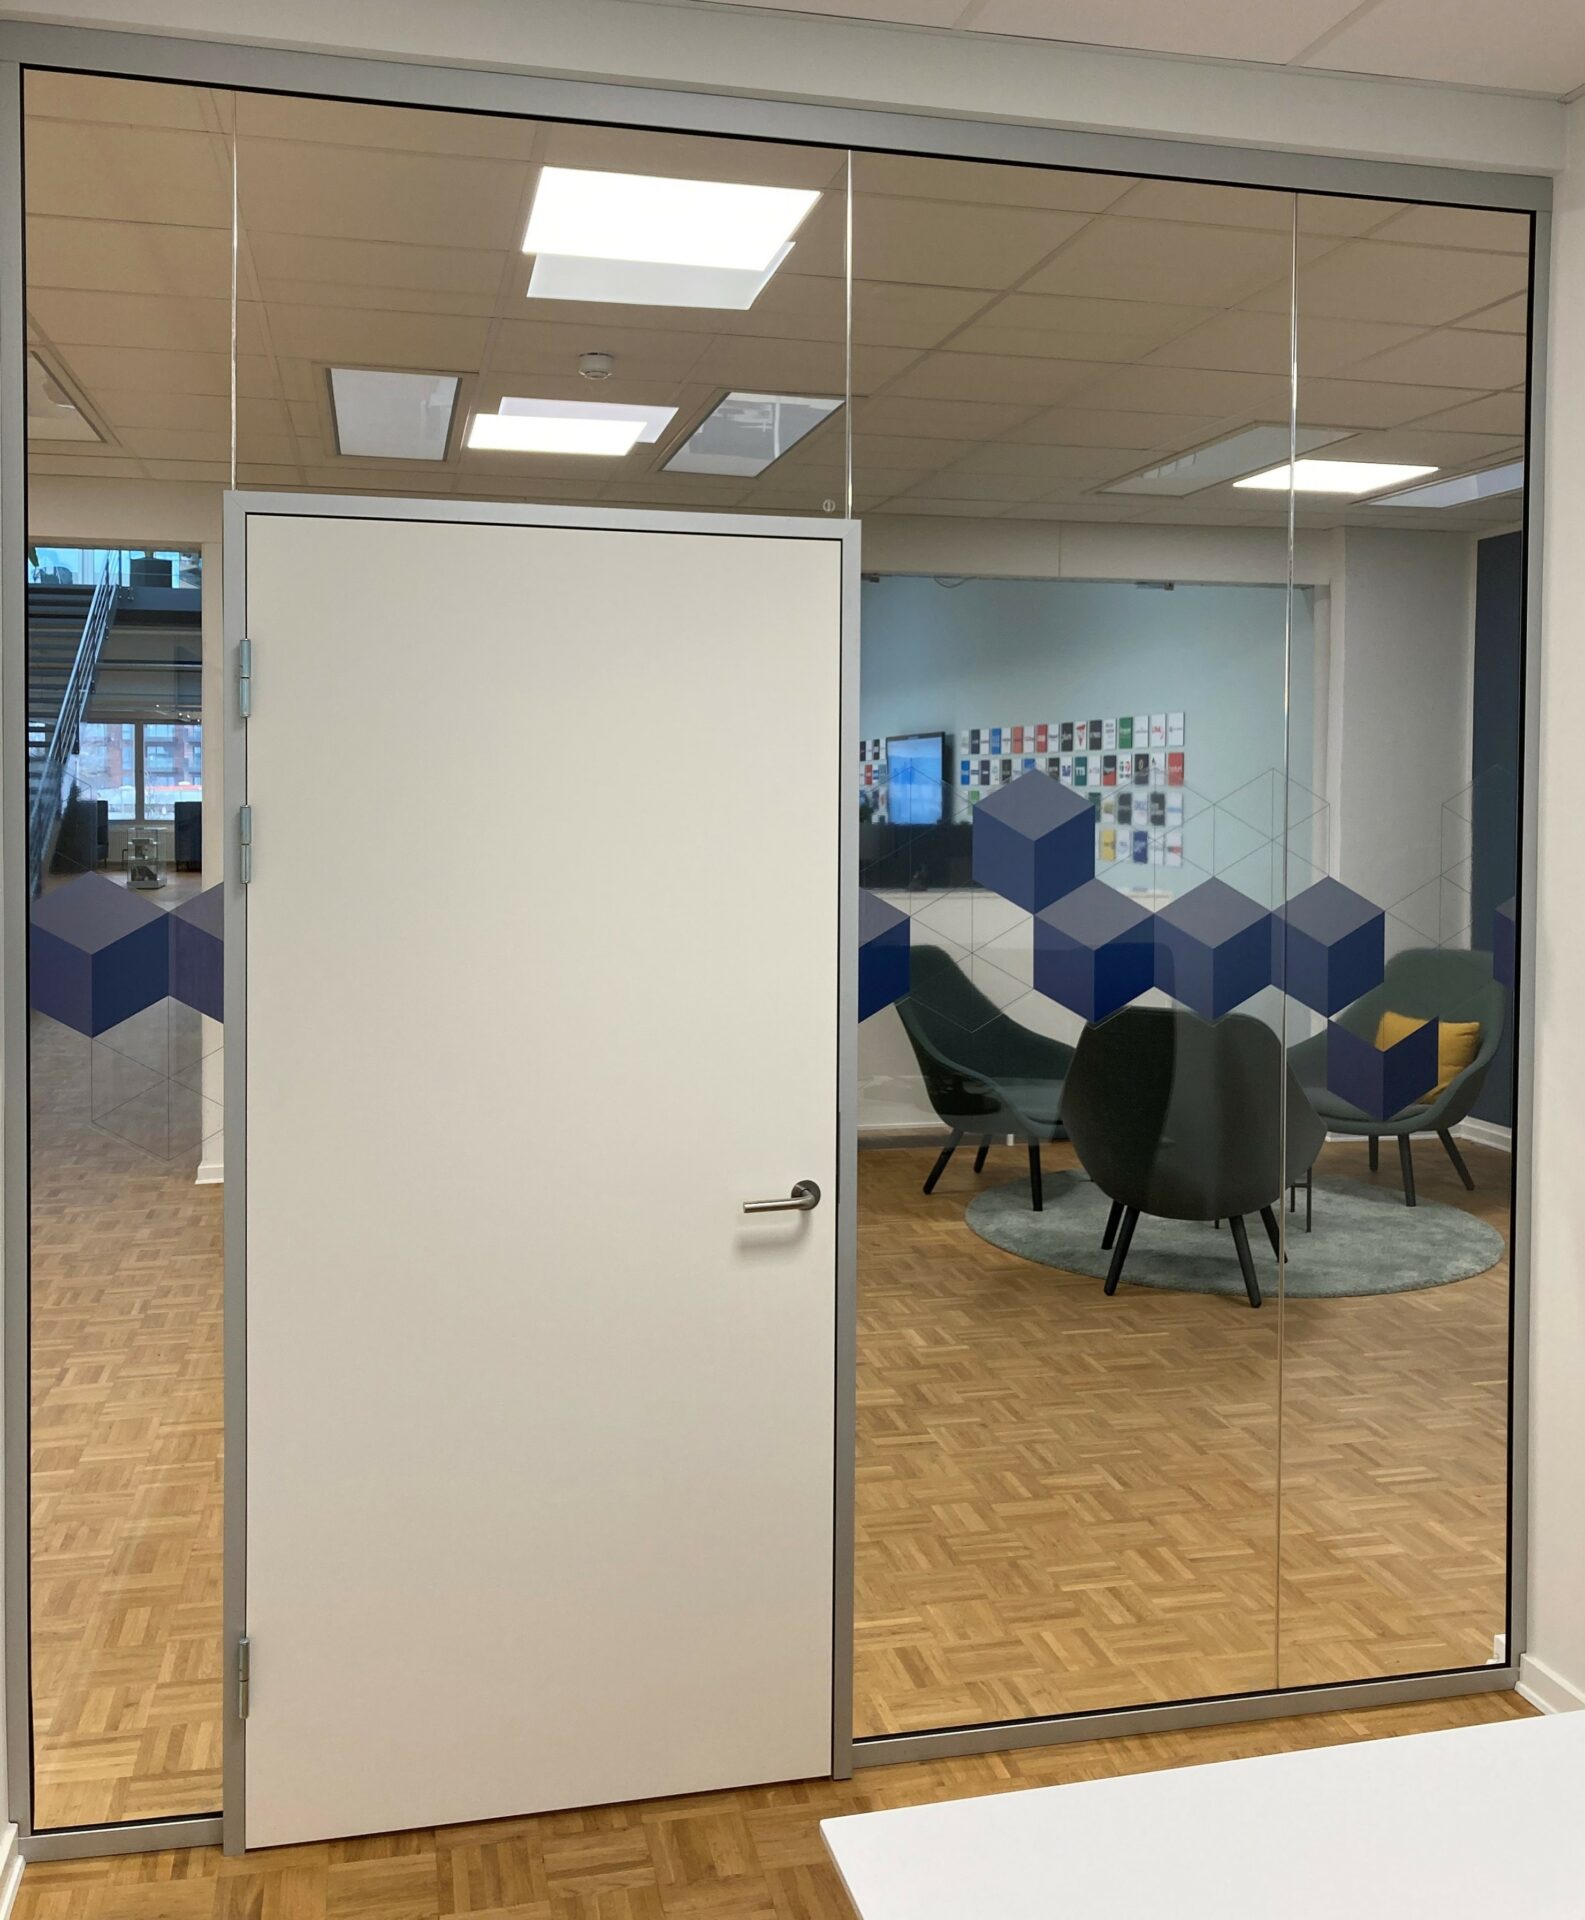 Vægge af glas skaber sammenhæng mellem adskilte kontorer